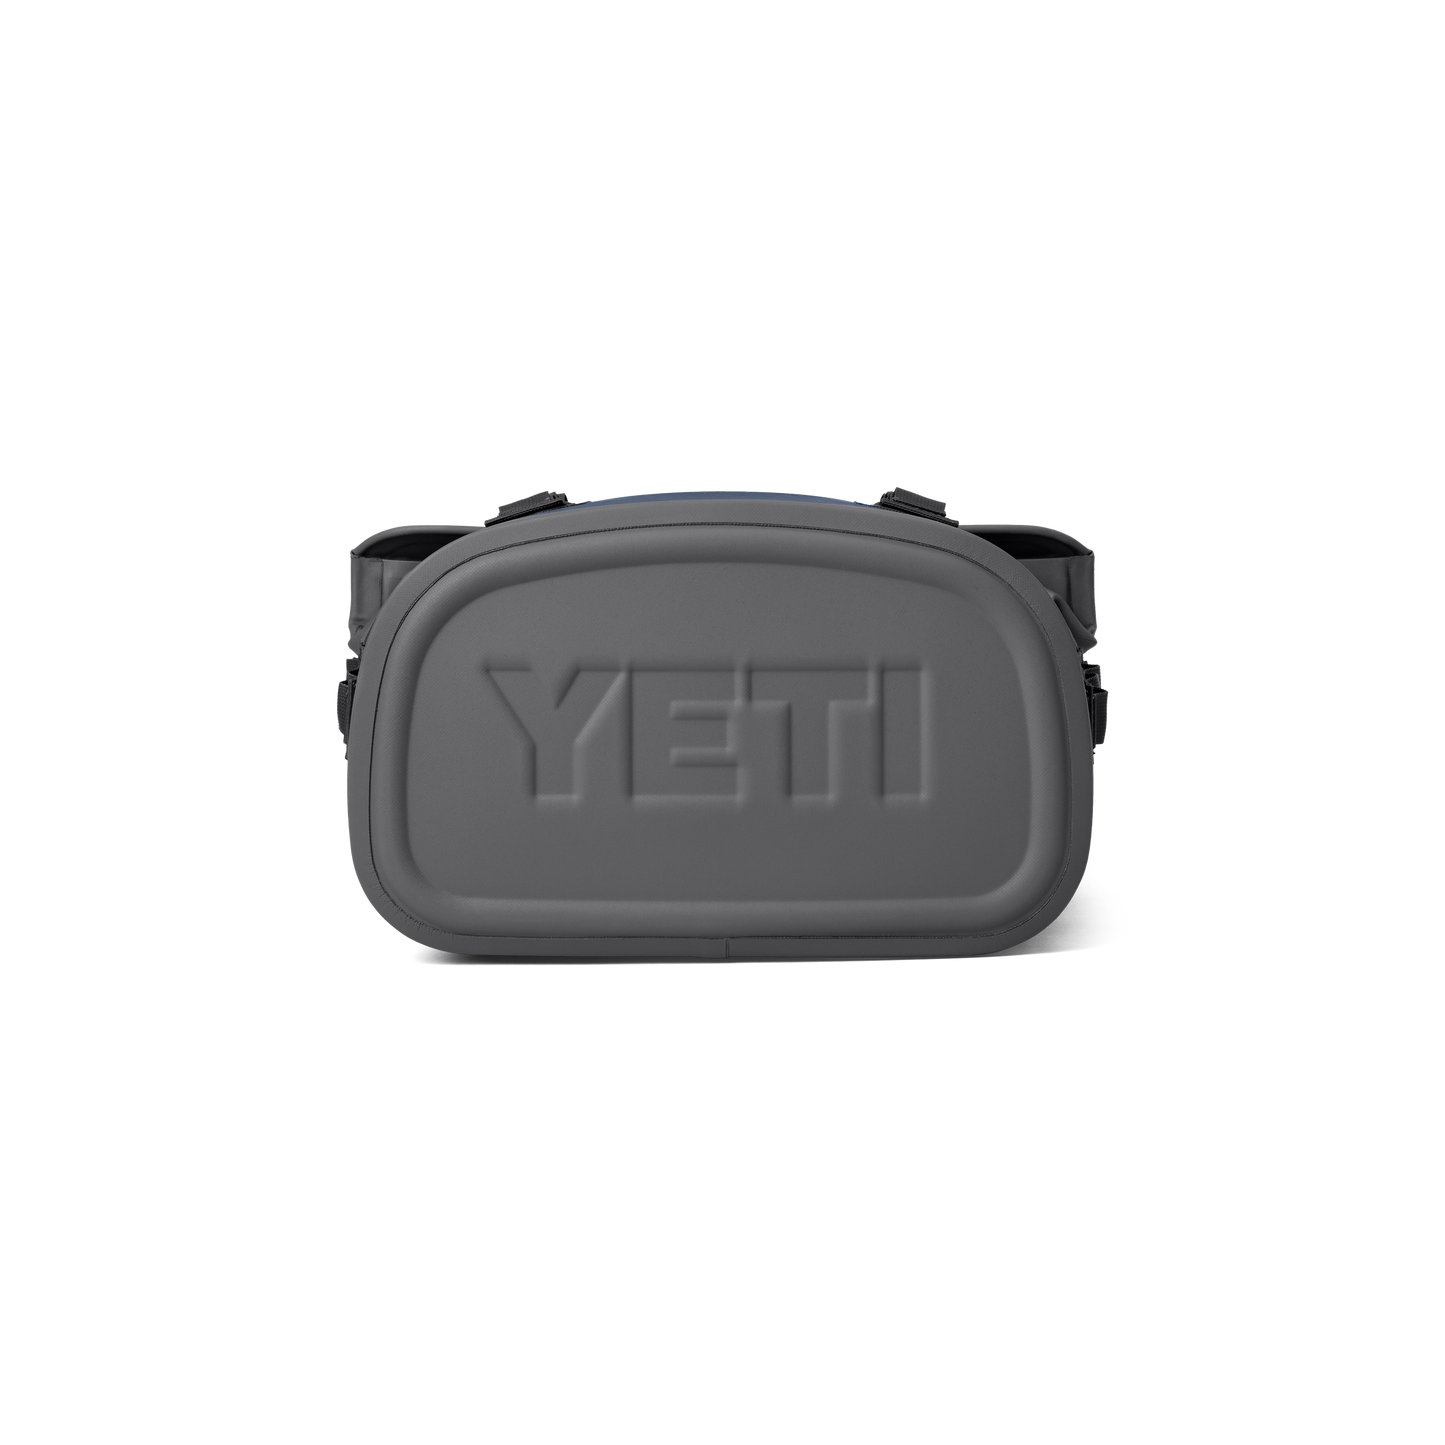 YETI Hopper® M12 Soft Backpack Cooler Navy